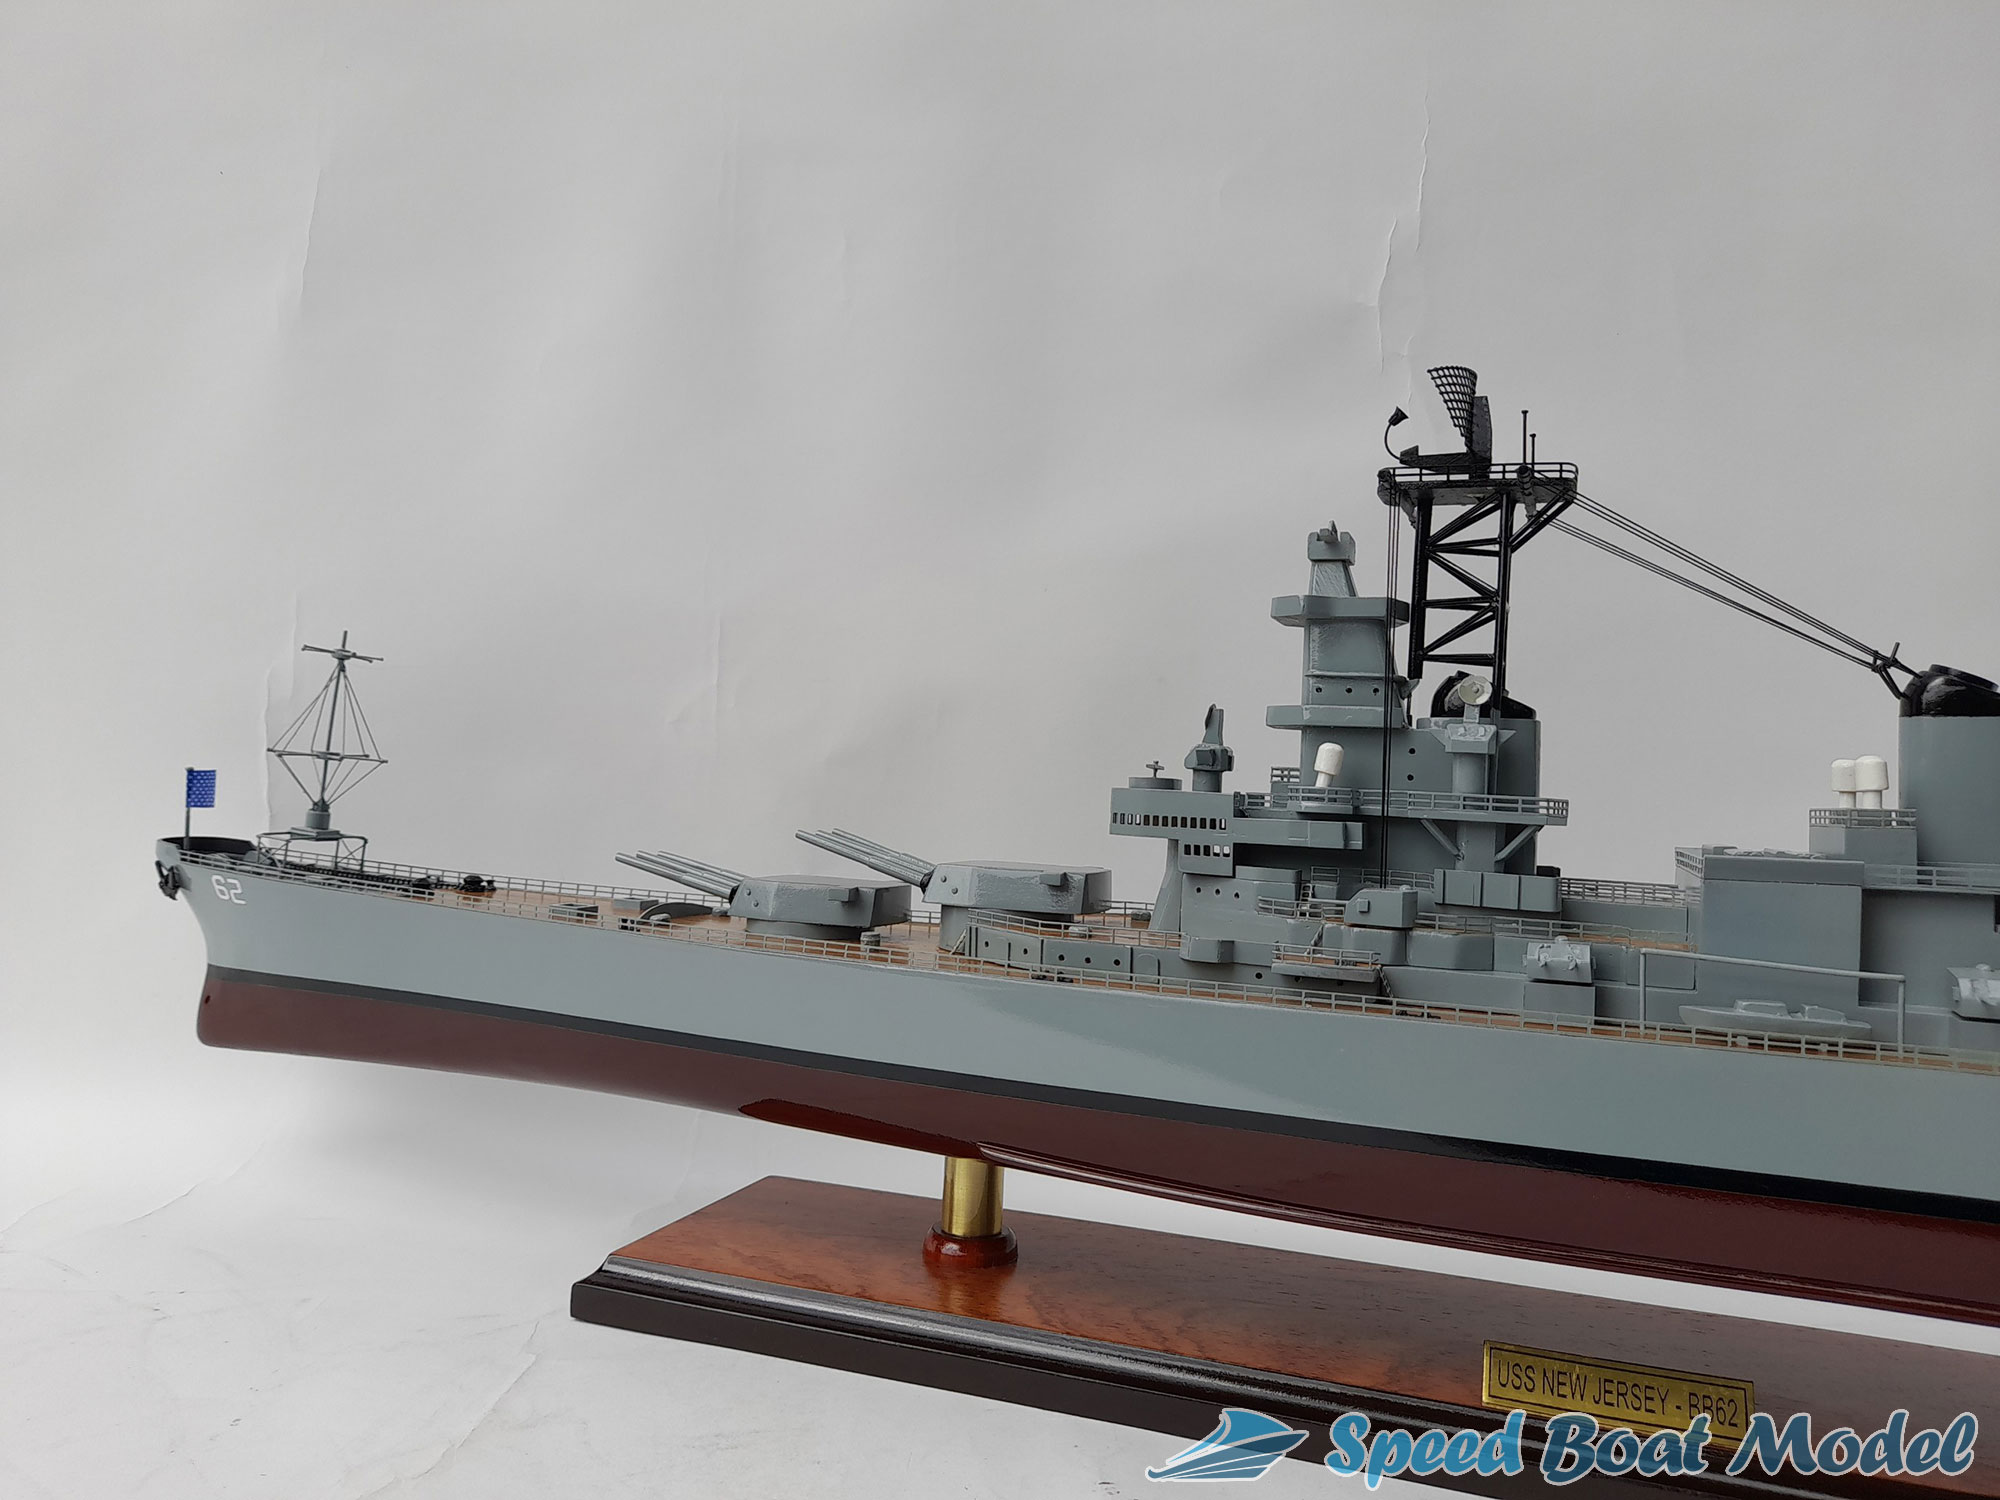 Uss New Jersey (bb-62) Battleship Model 39.3